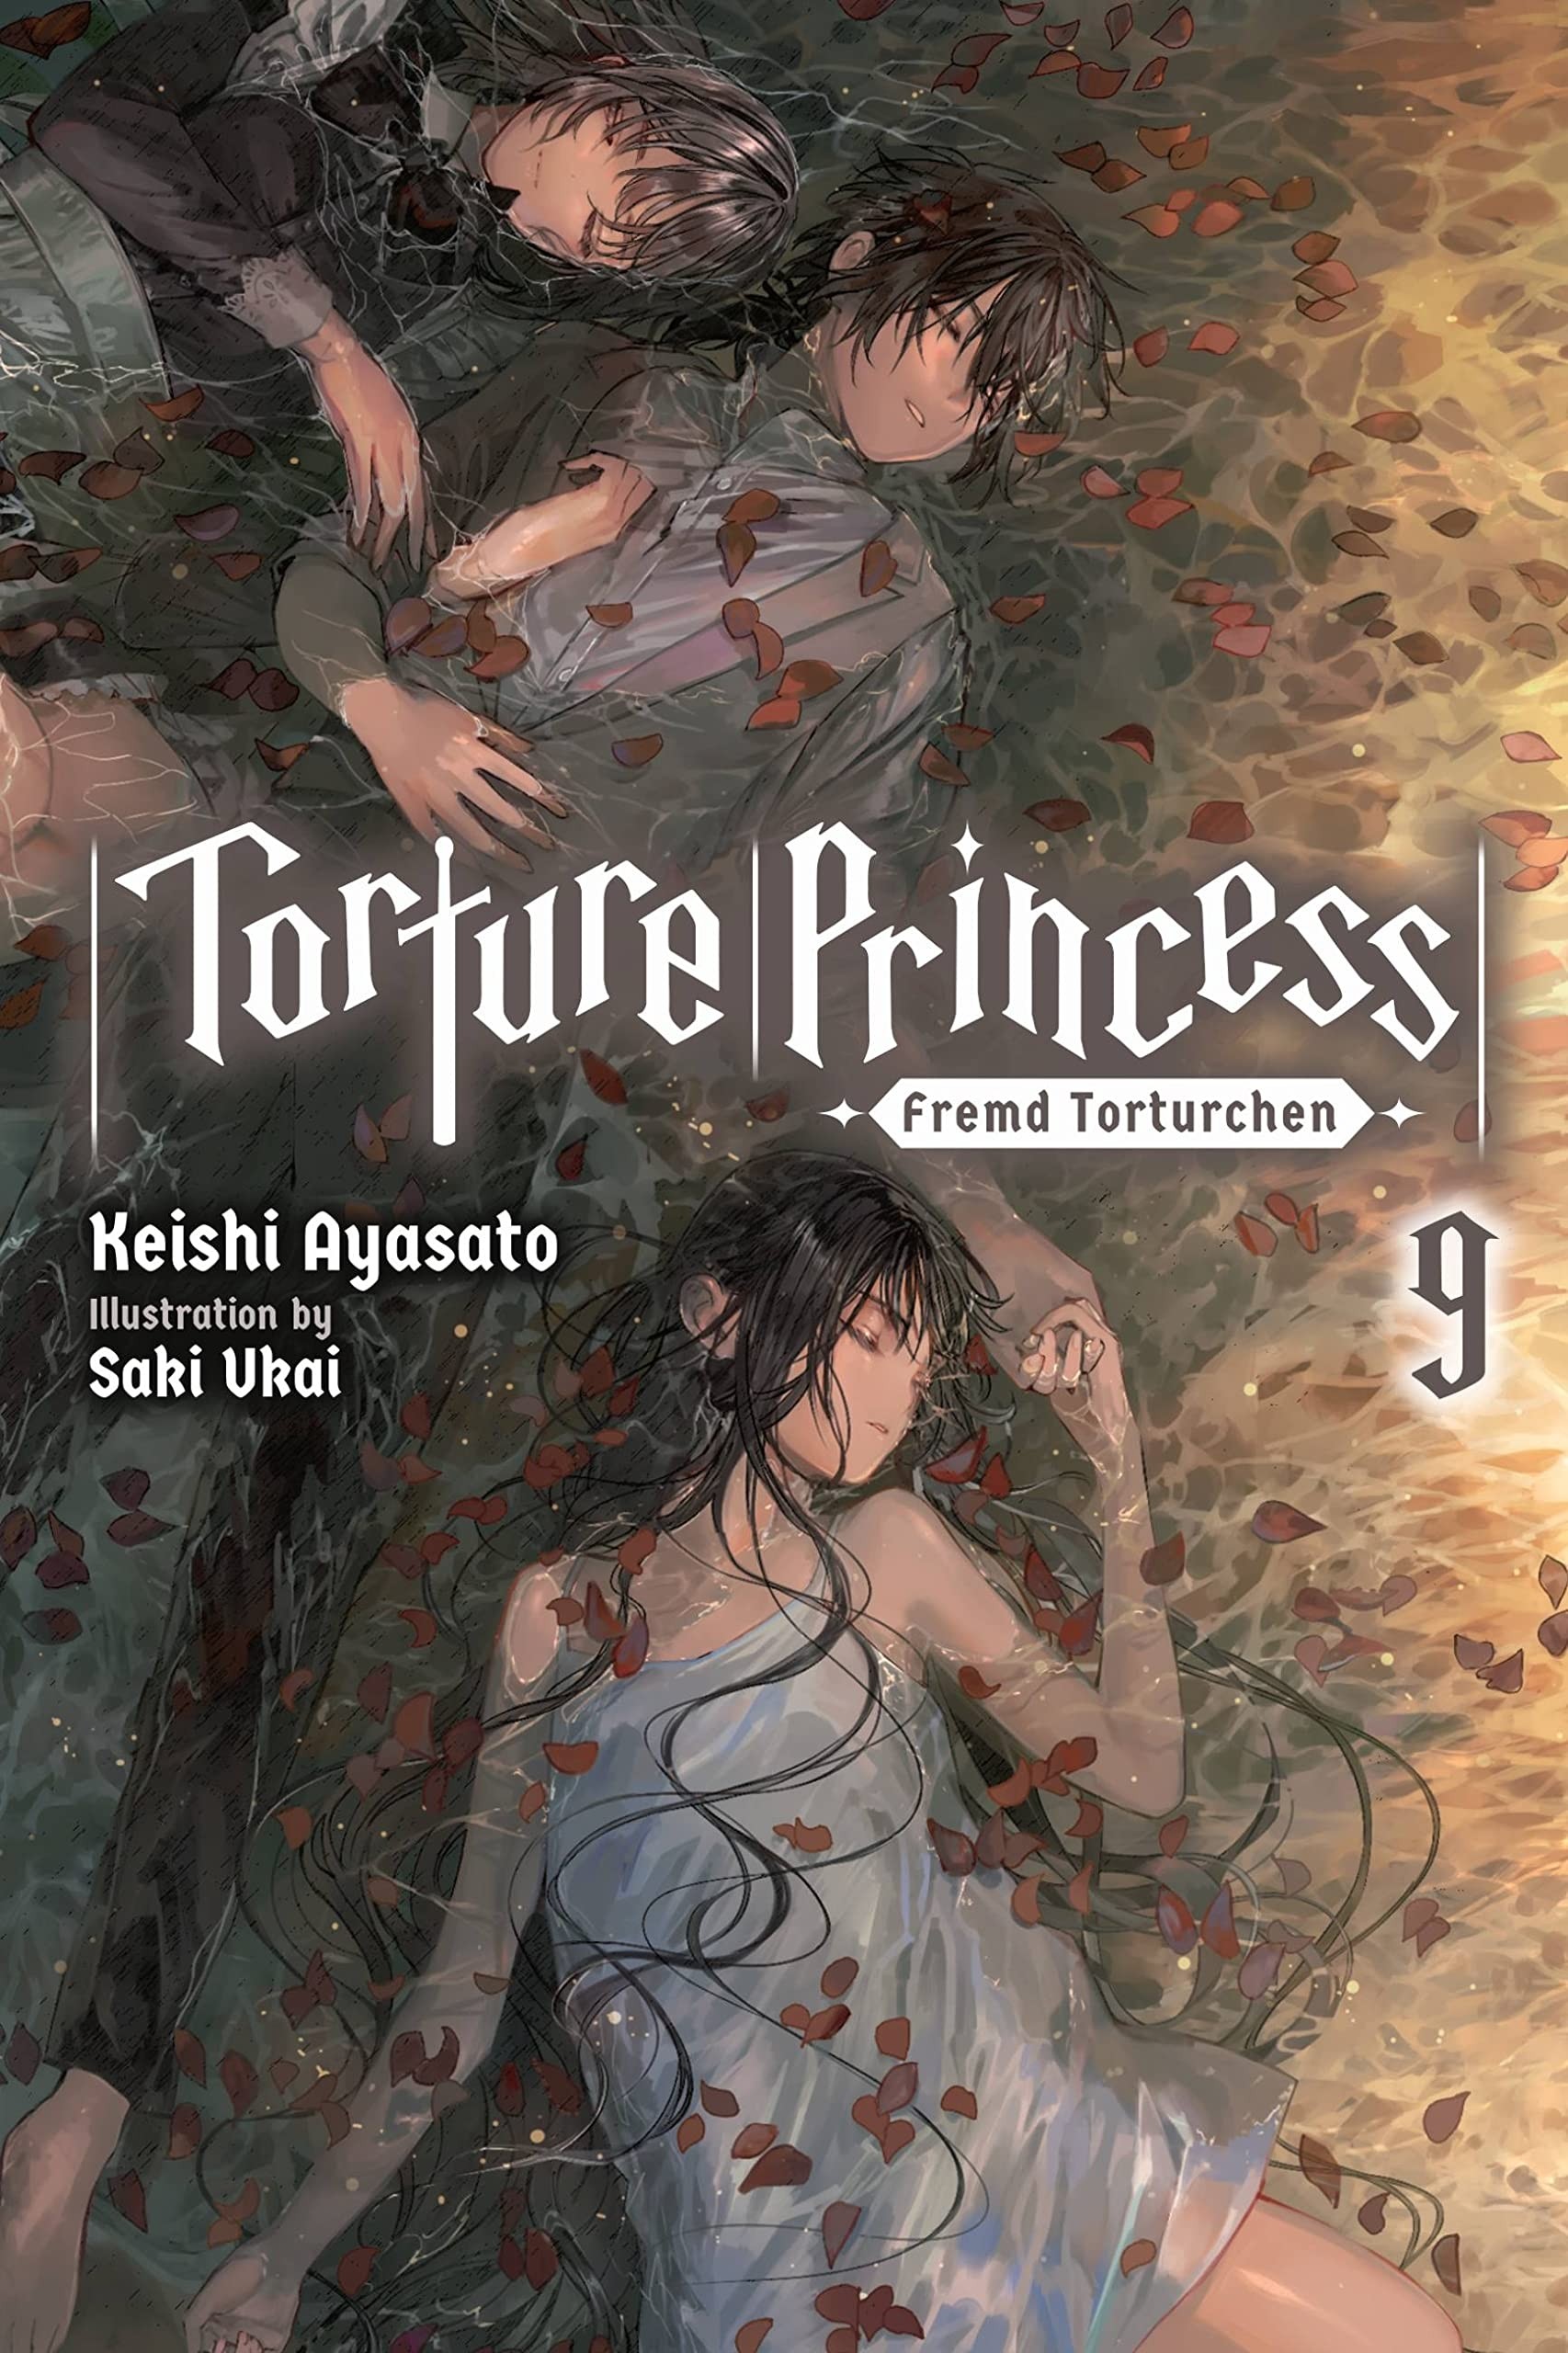 Torture Princess: Fremd Torturchen, (Light Novel) Vol. 09